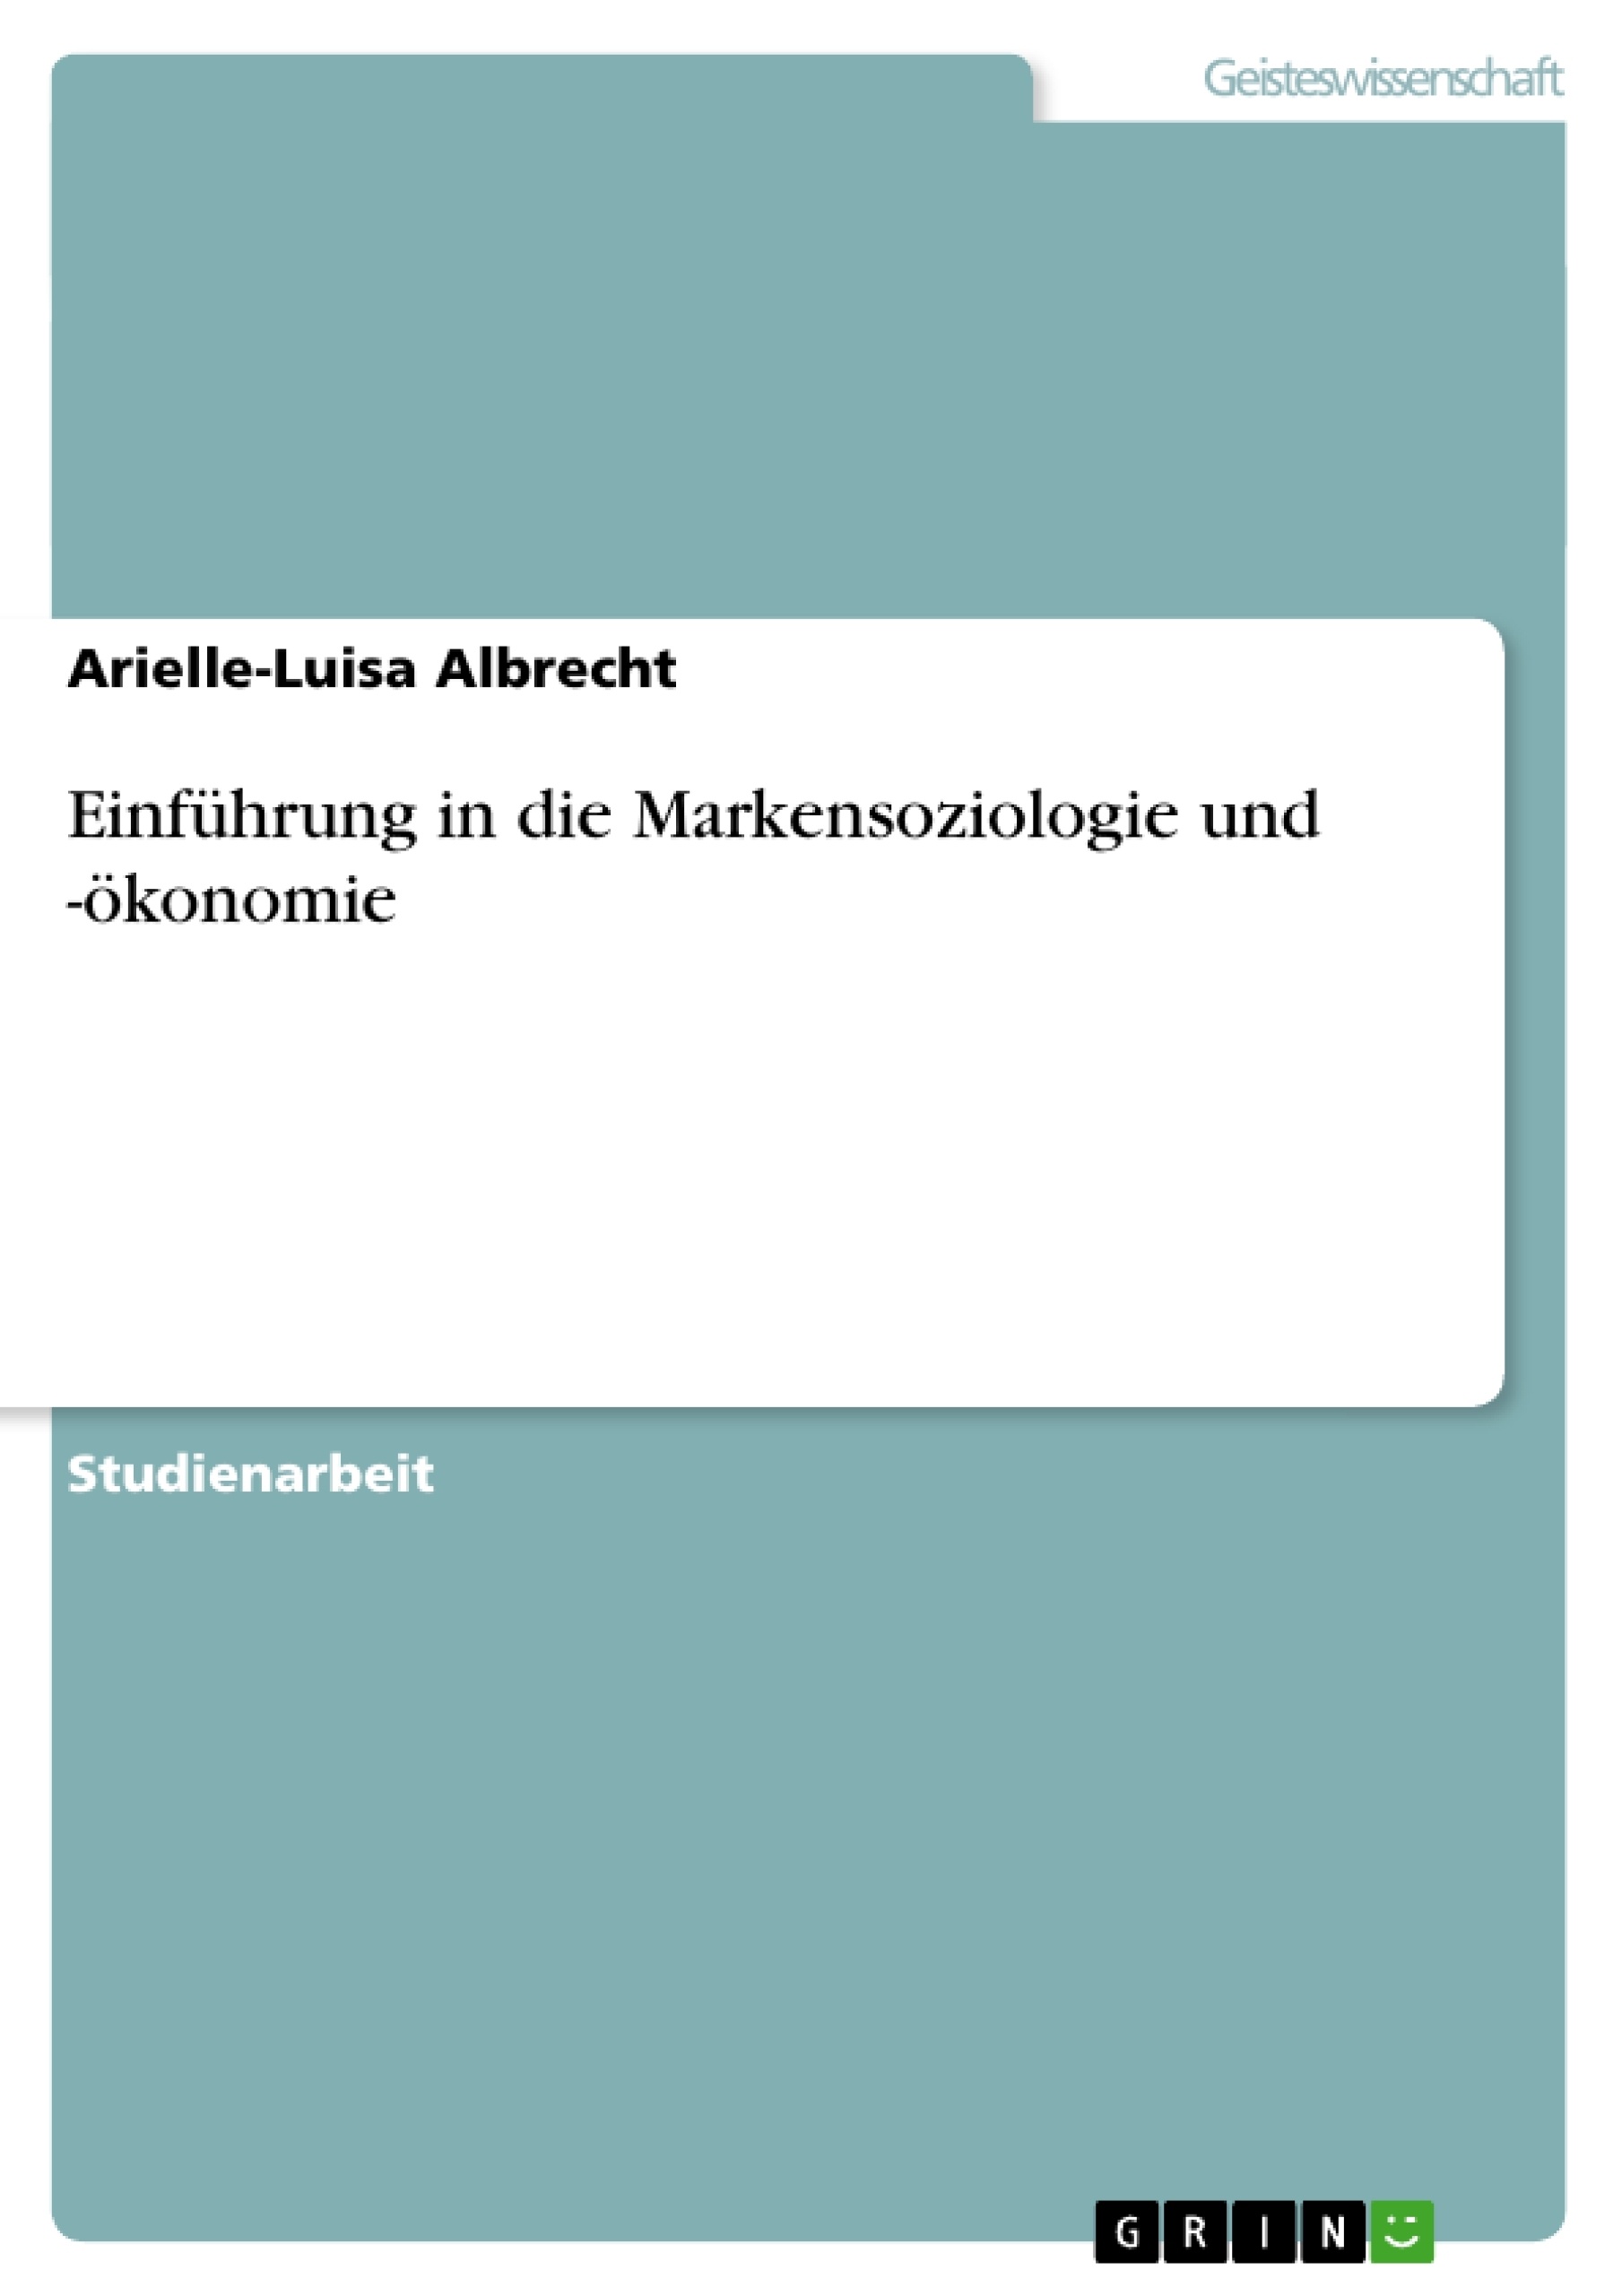 Titre: Einführung in die Markensoziologie und -ökonomie